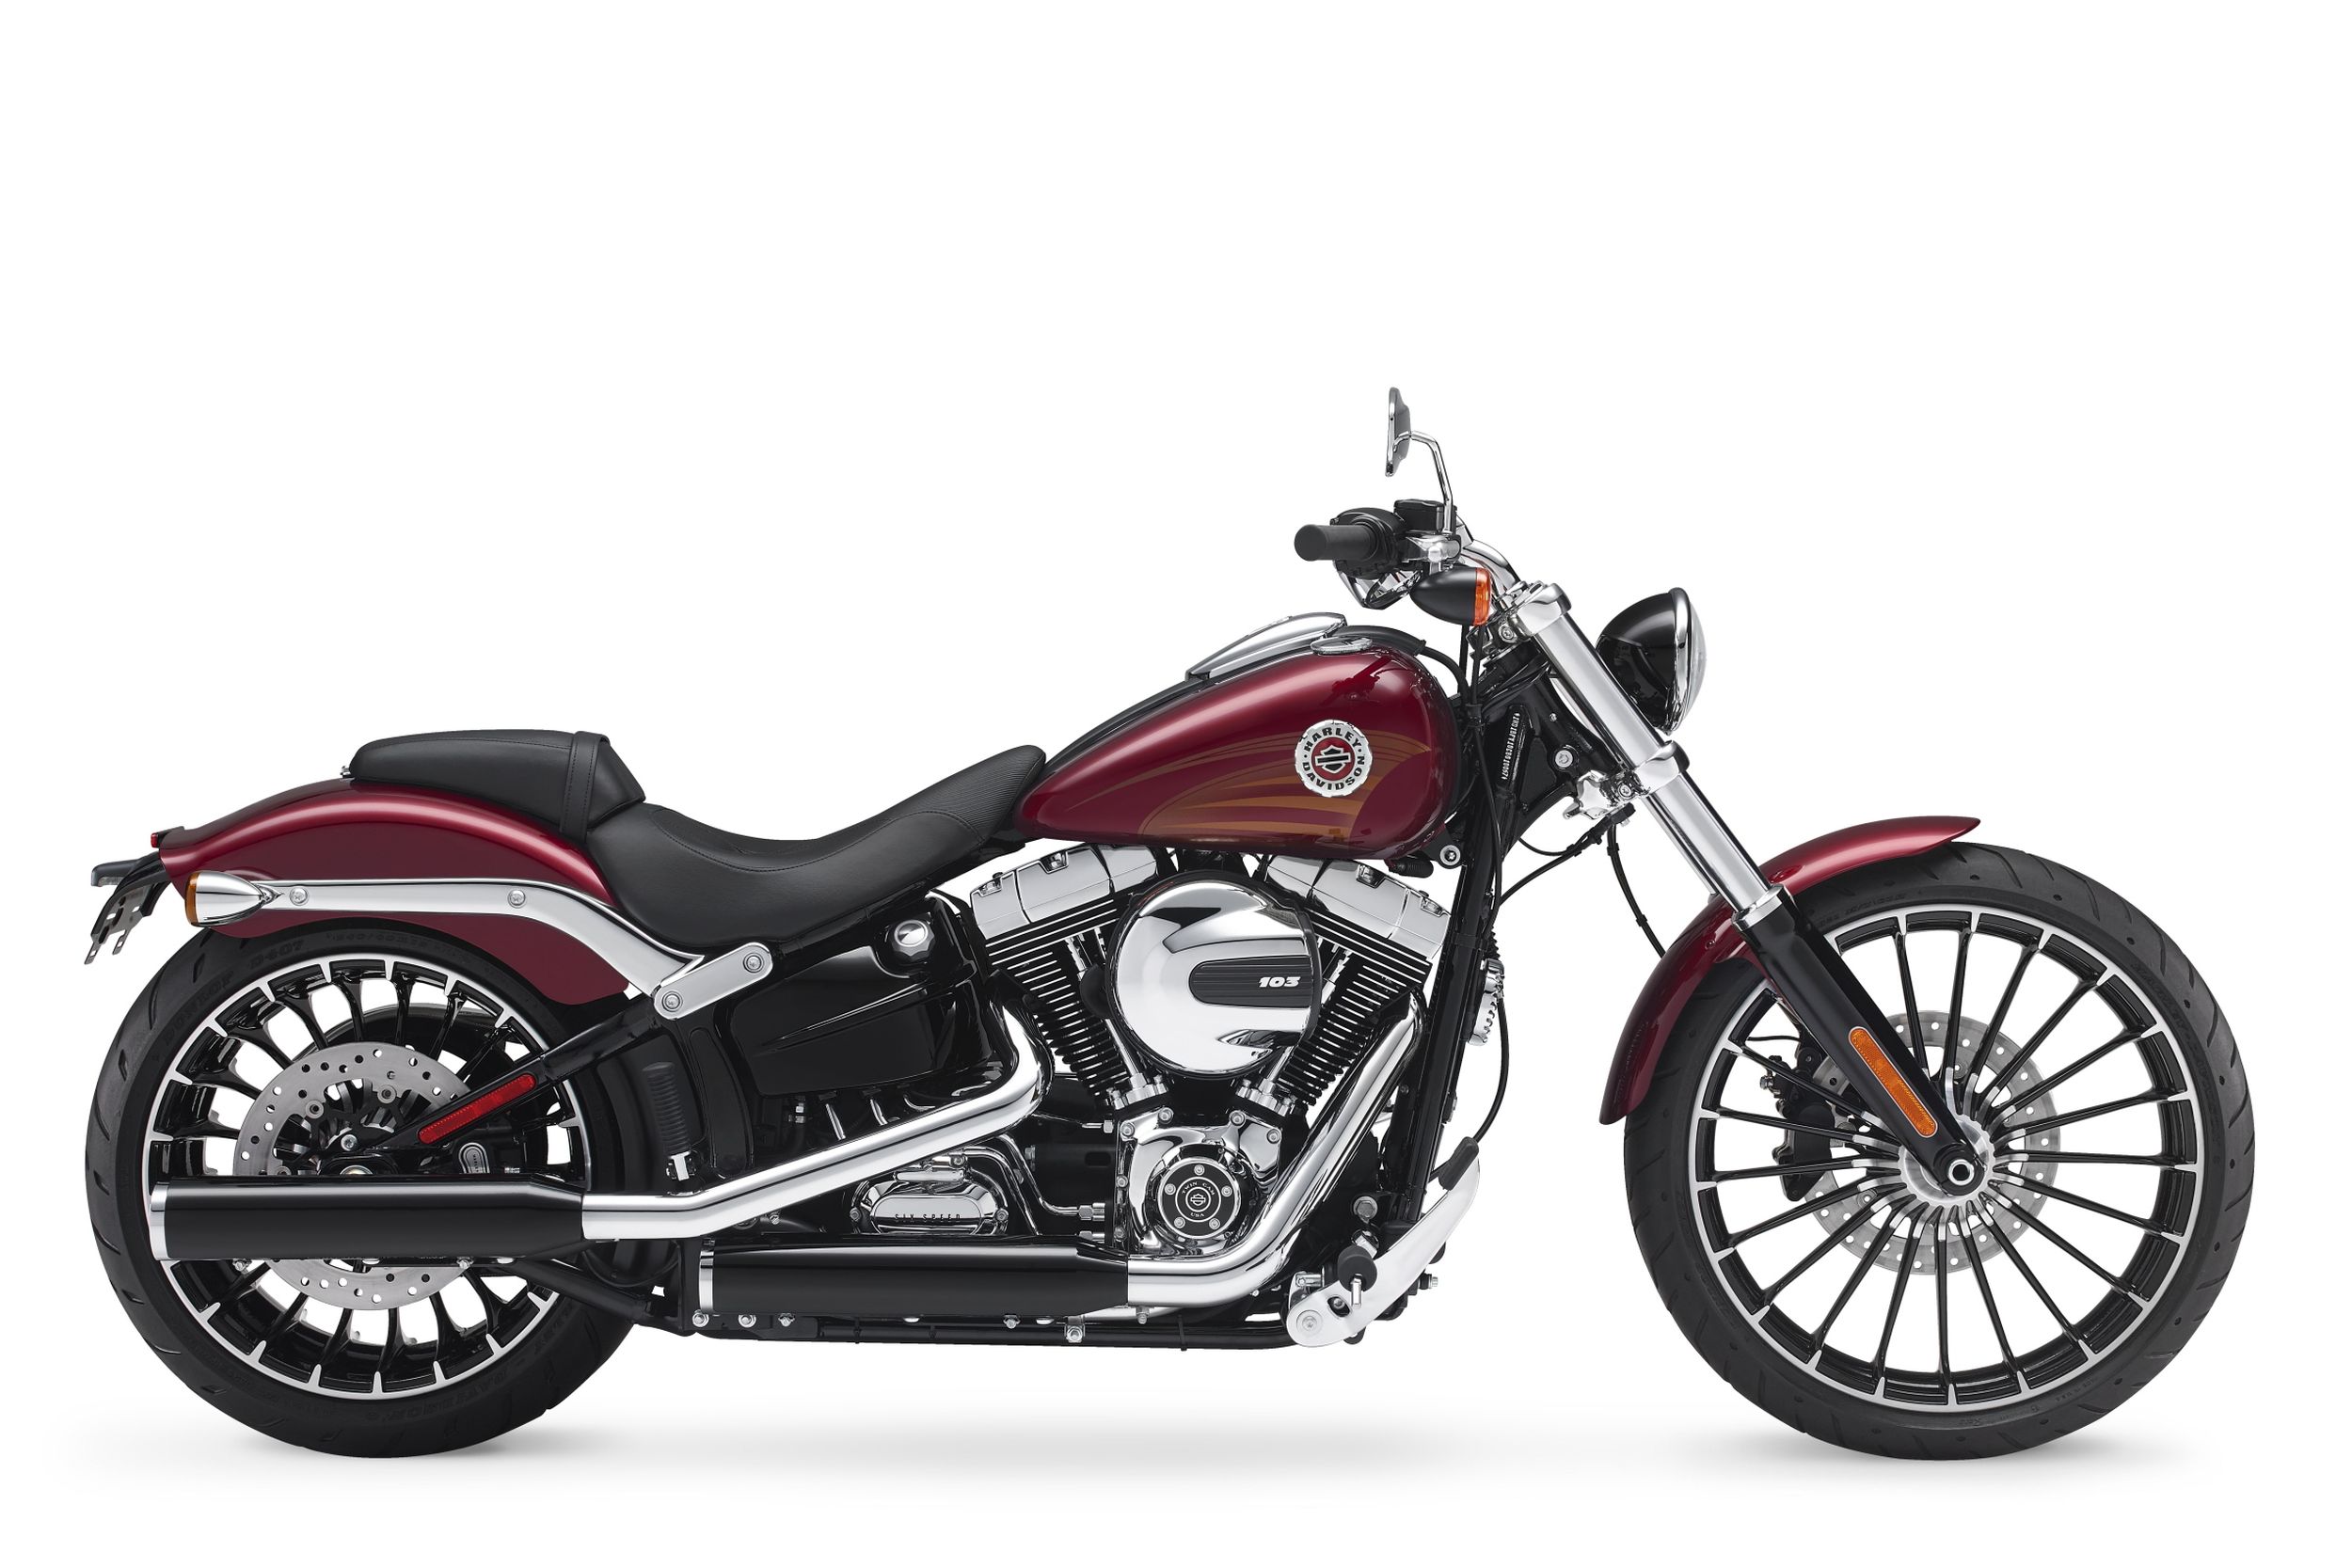 Gebrauchte HarleyDavidson Softail Breakout FXSB Motorräder kaufen